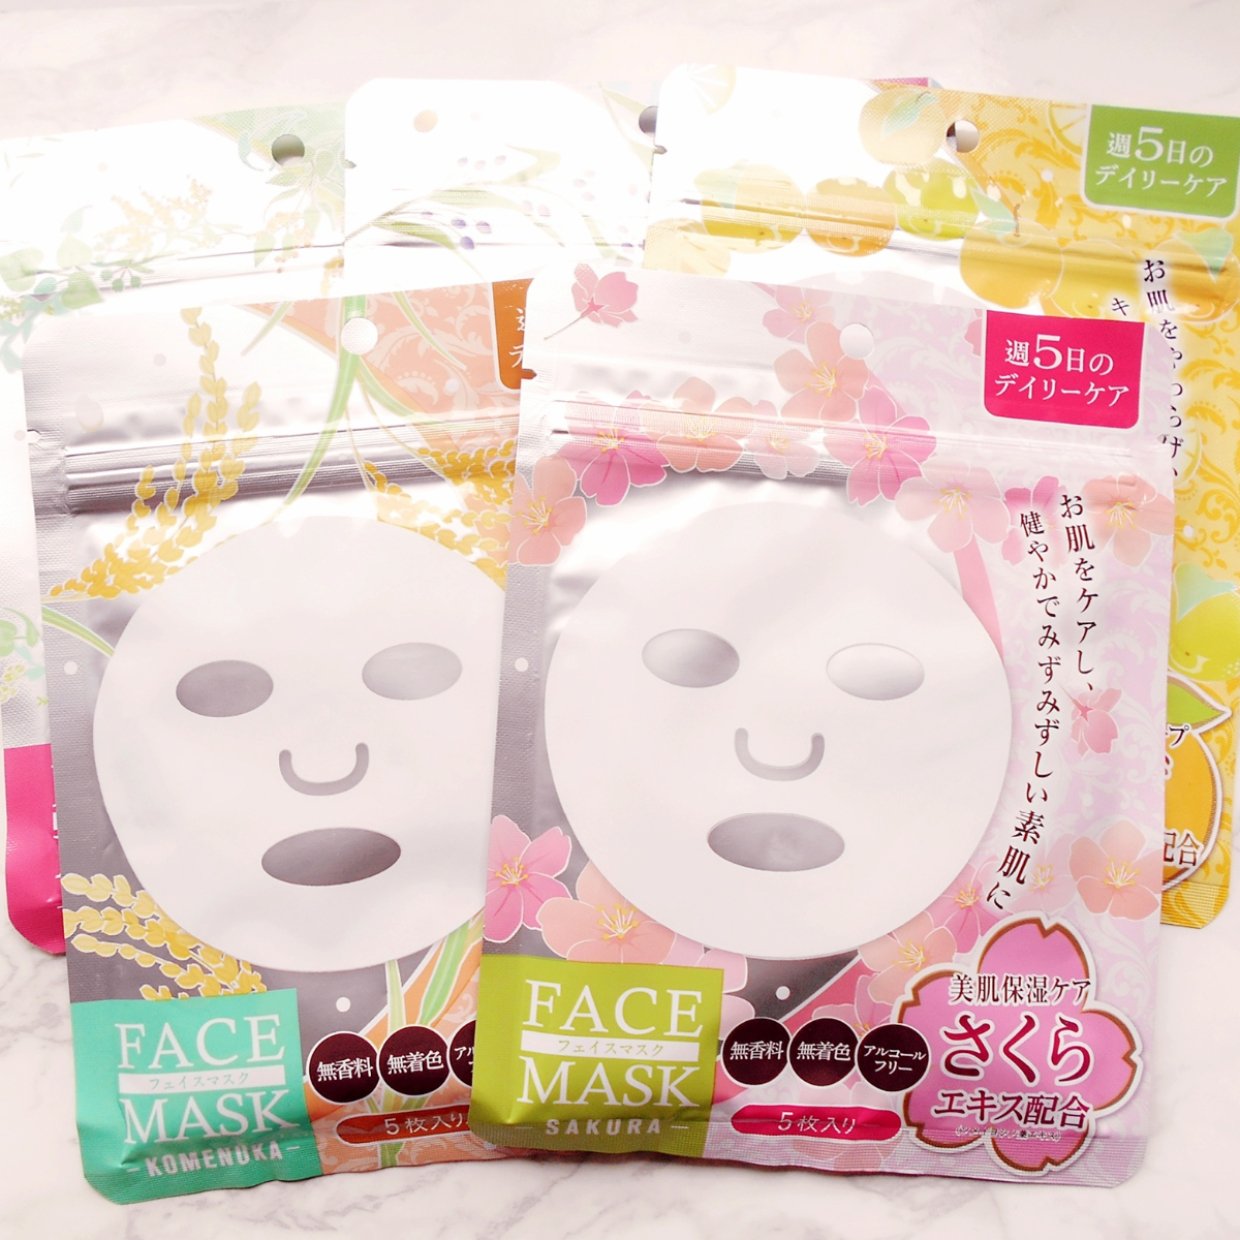  【ダイソー】の「フェイスマスク5枚入」のコスパが最高すぎる♡1枚約20円でお手軽ケア♪ 